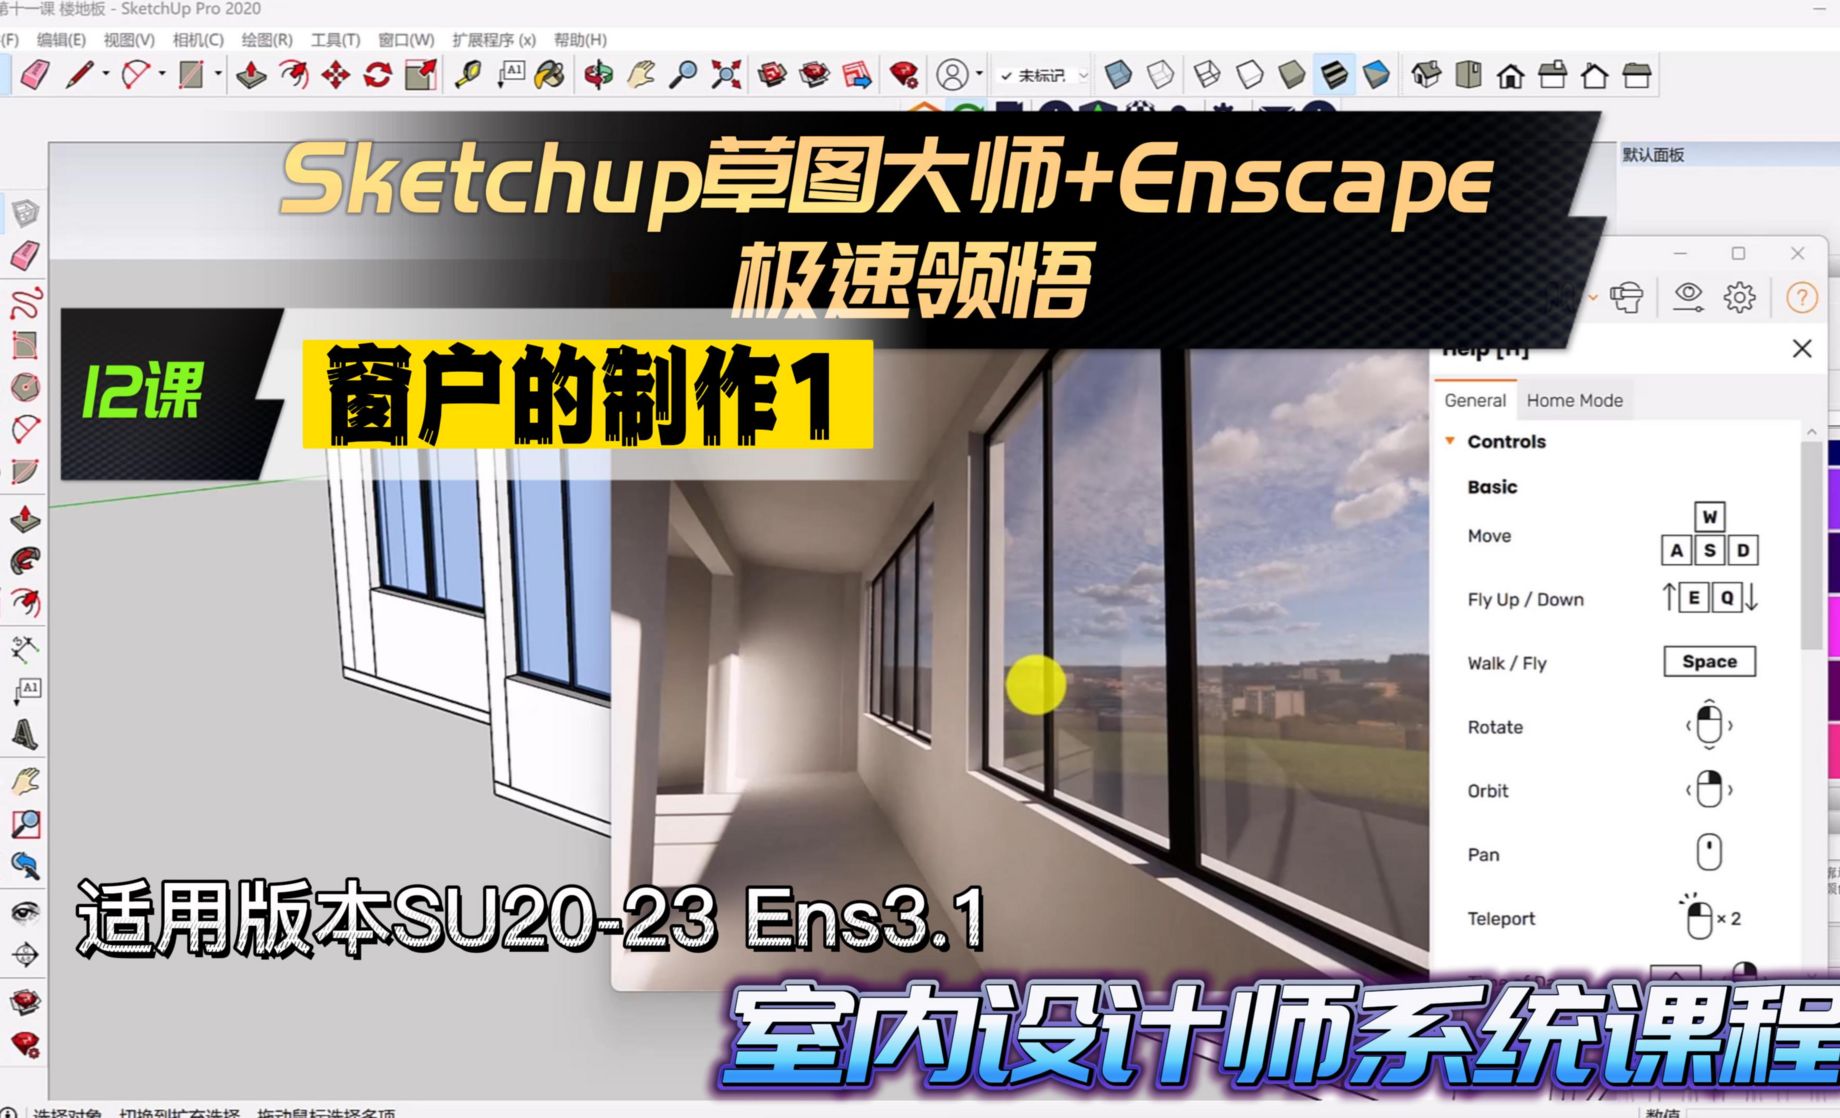 Sketchup+Enscape室内设计极速领悟-窗户的制作1